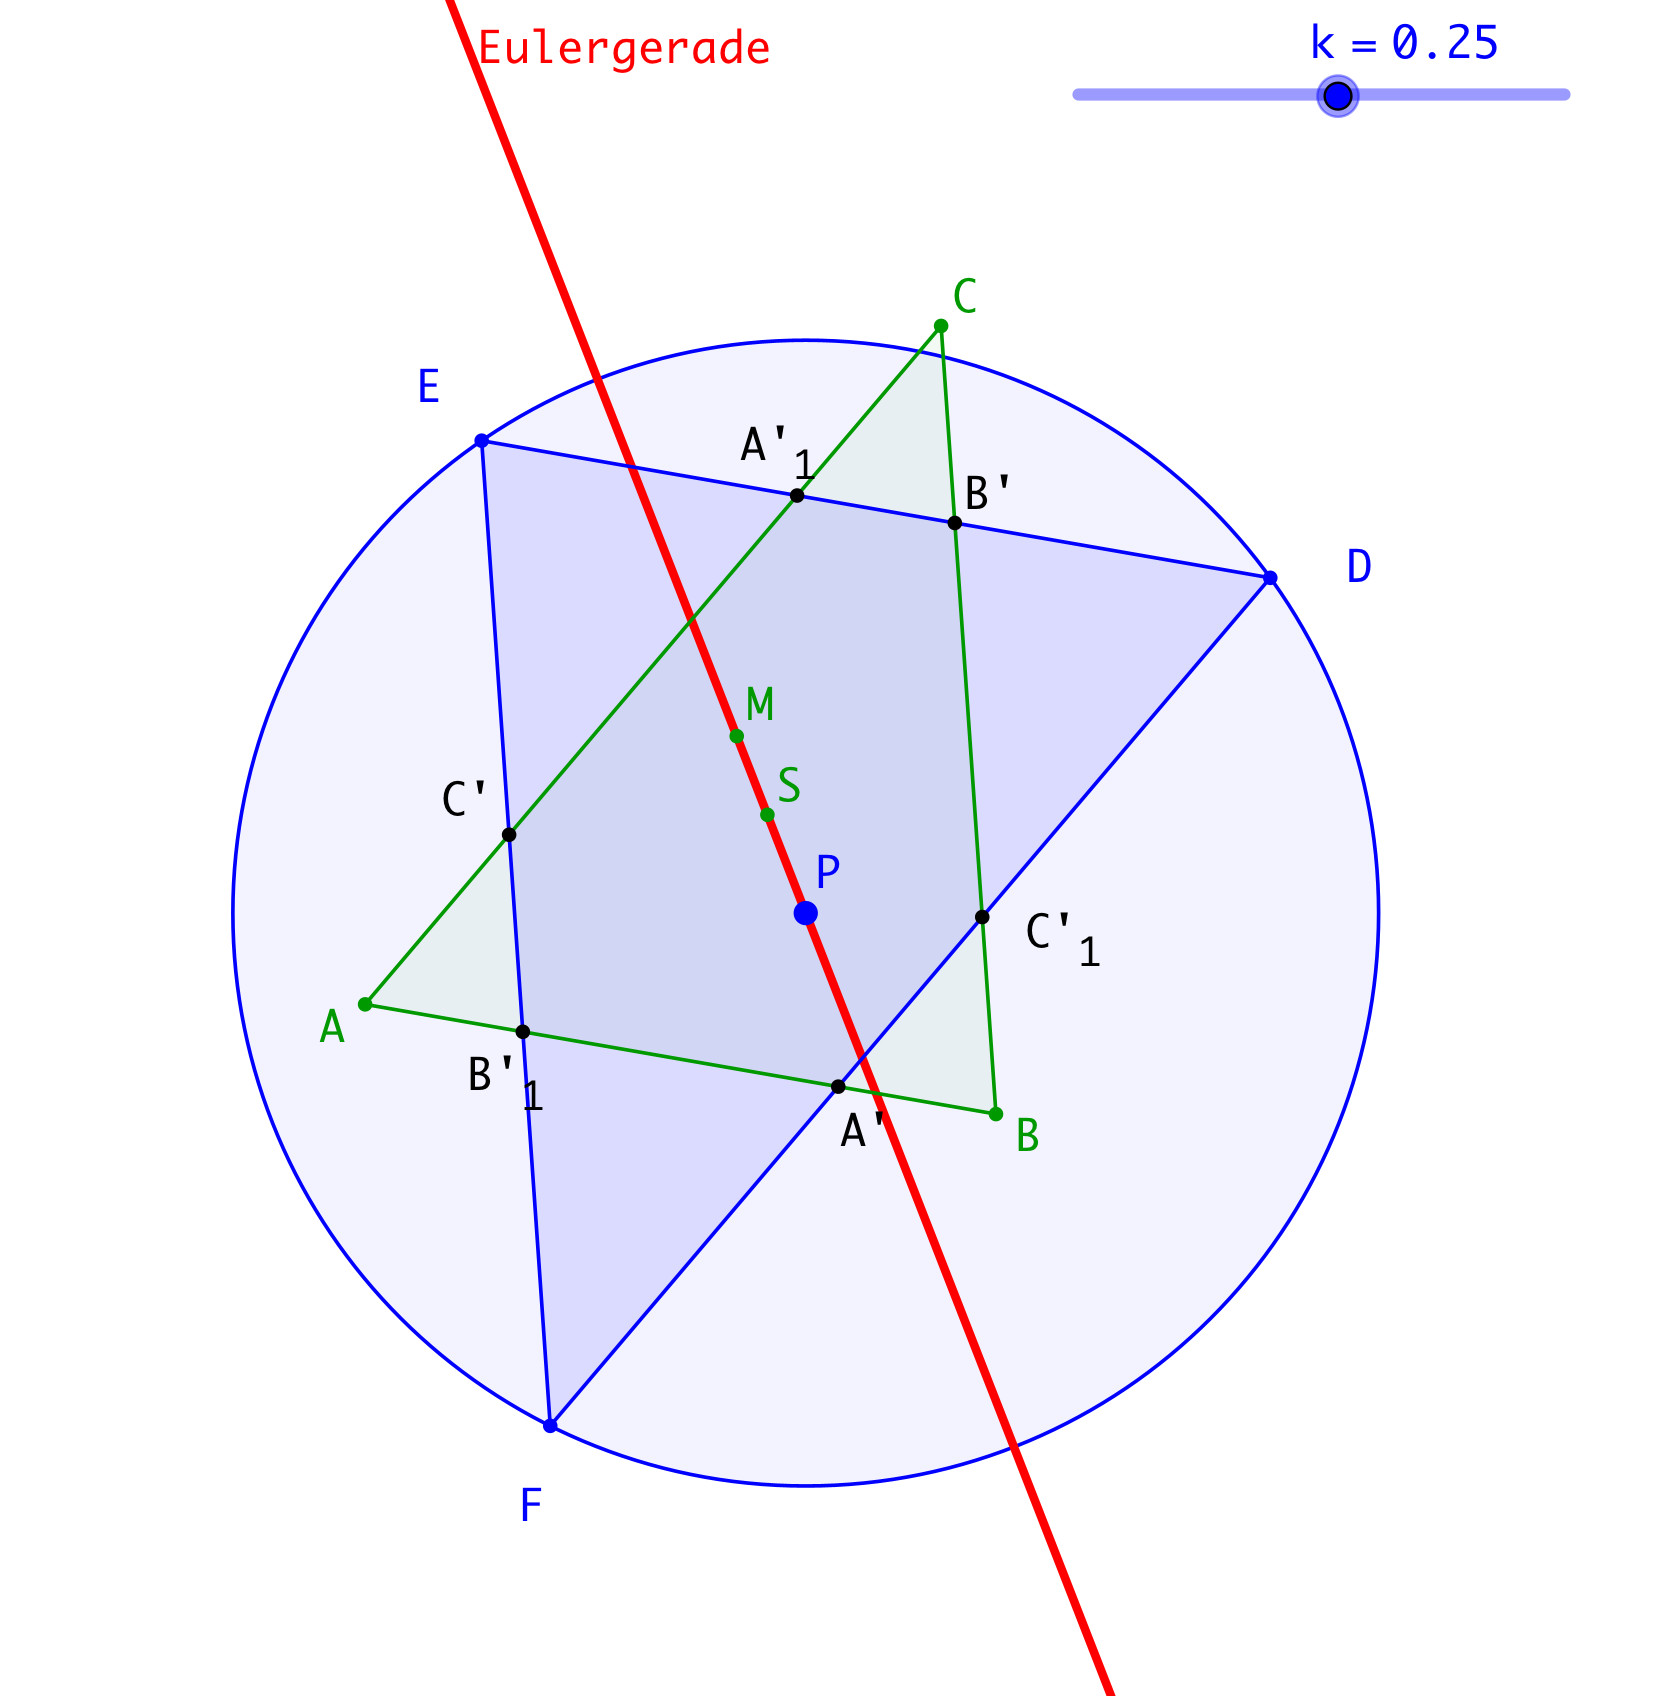 Ein Bild, das Diagramm, Kreis, Reihe enthält.

Automatisch generierte Beschreibung